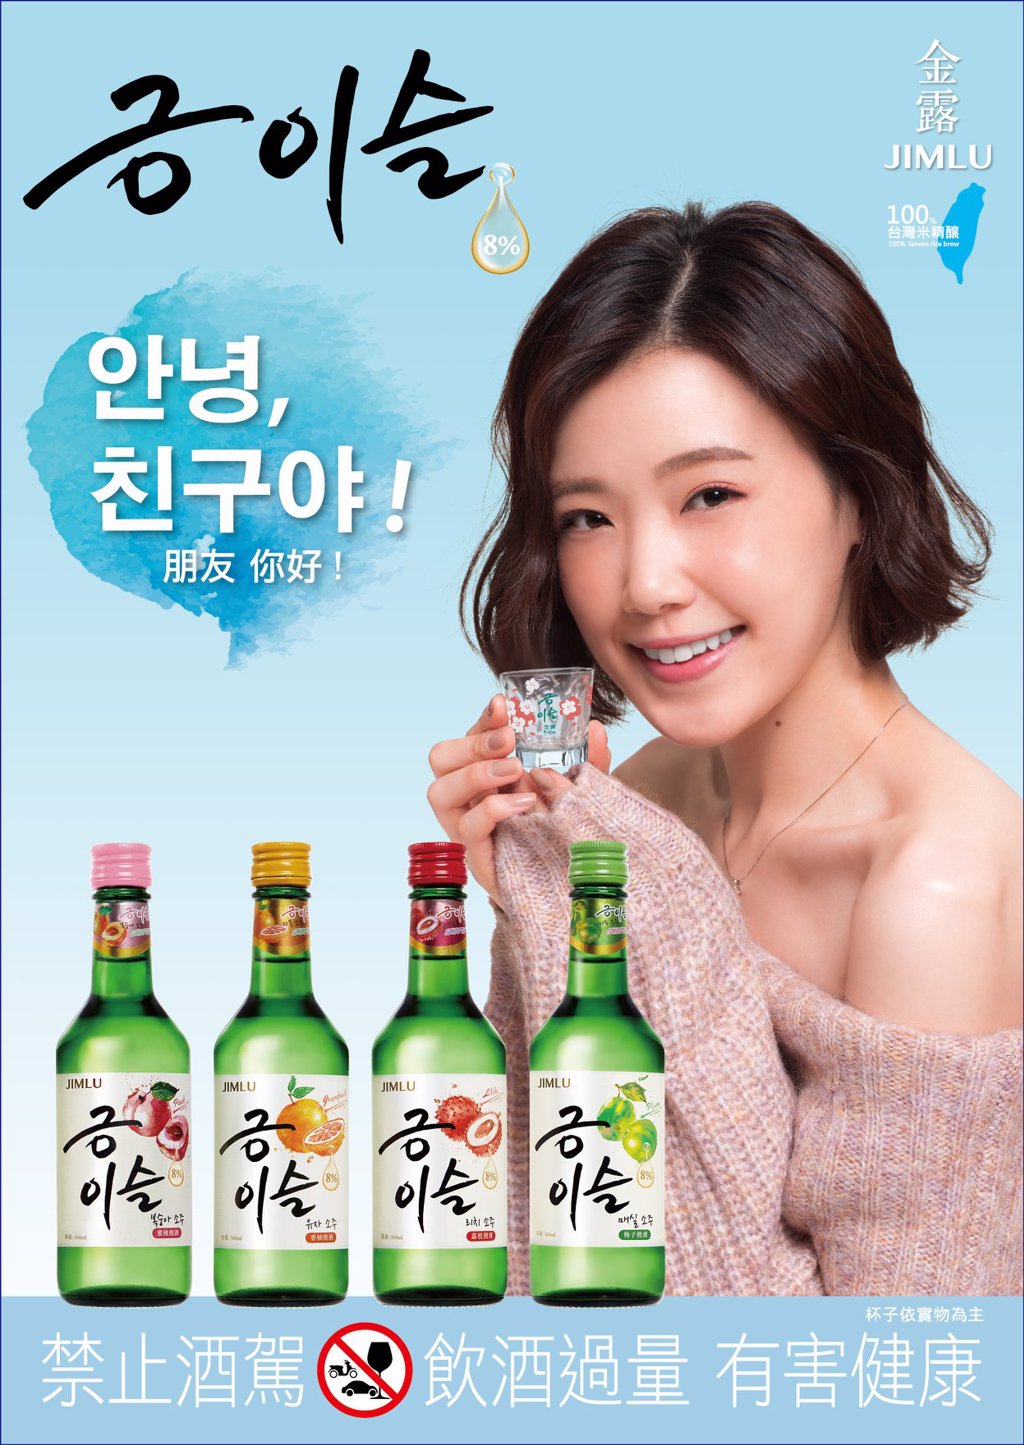  韓國金露燒酒酒精濃度僅8％較韓國在地燒酒溫和許多(圖/翻攝自臉書清露/金露금이슬)